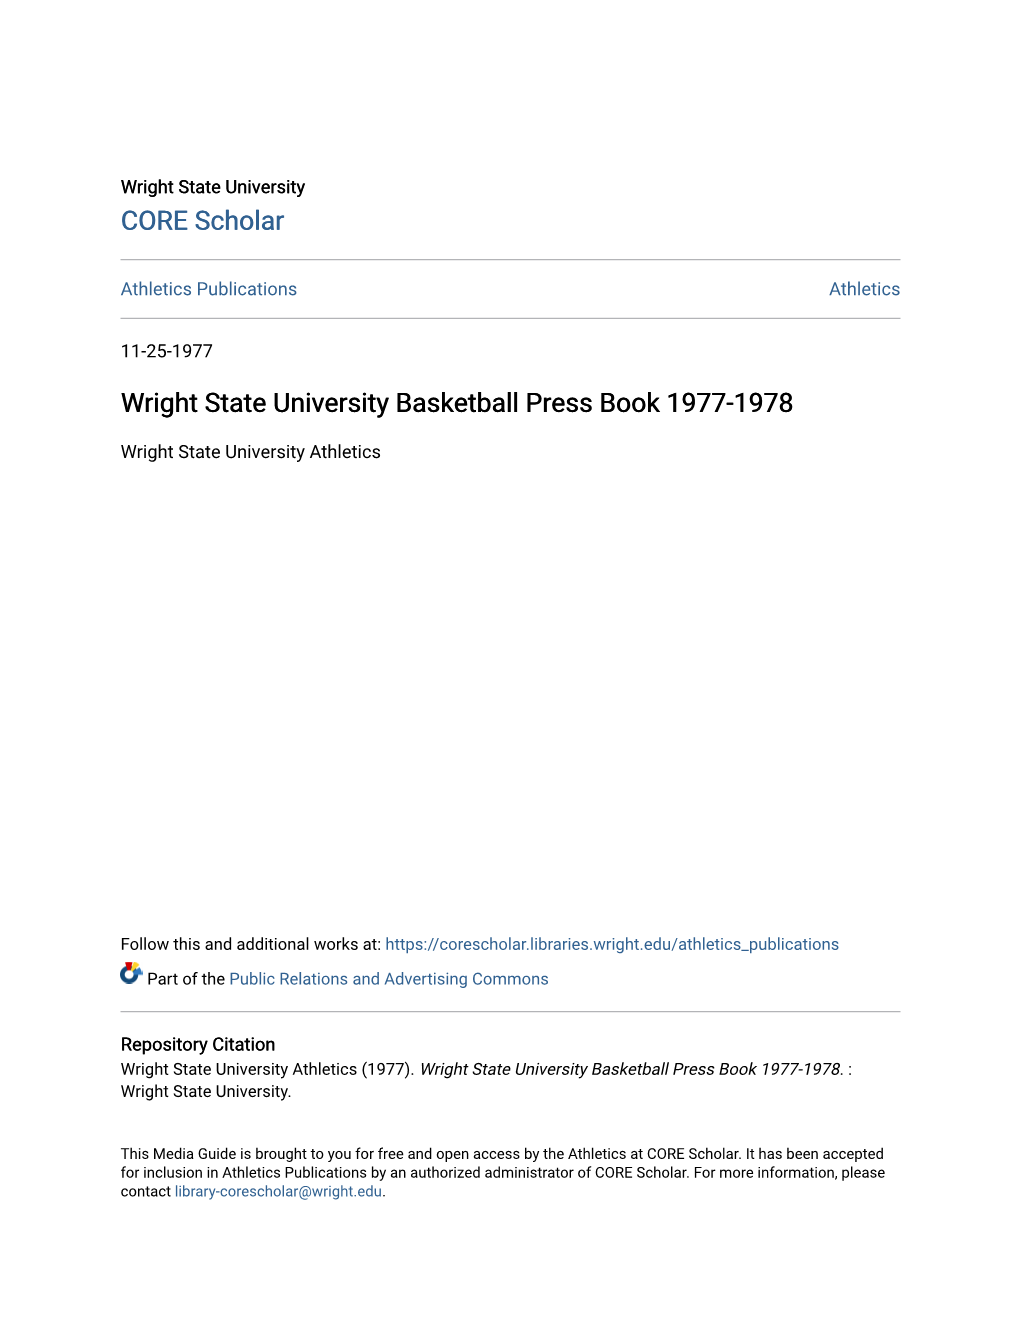 Wright State University Basketball Press Book 1977-1978